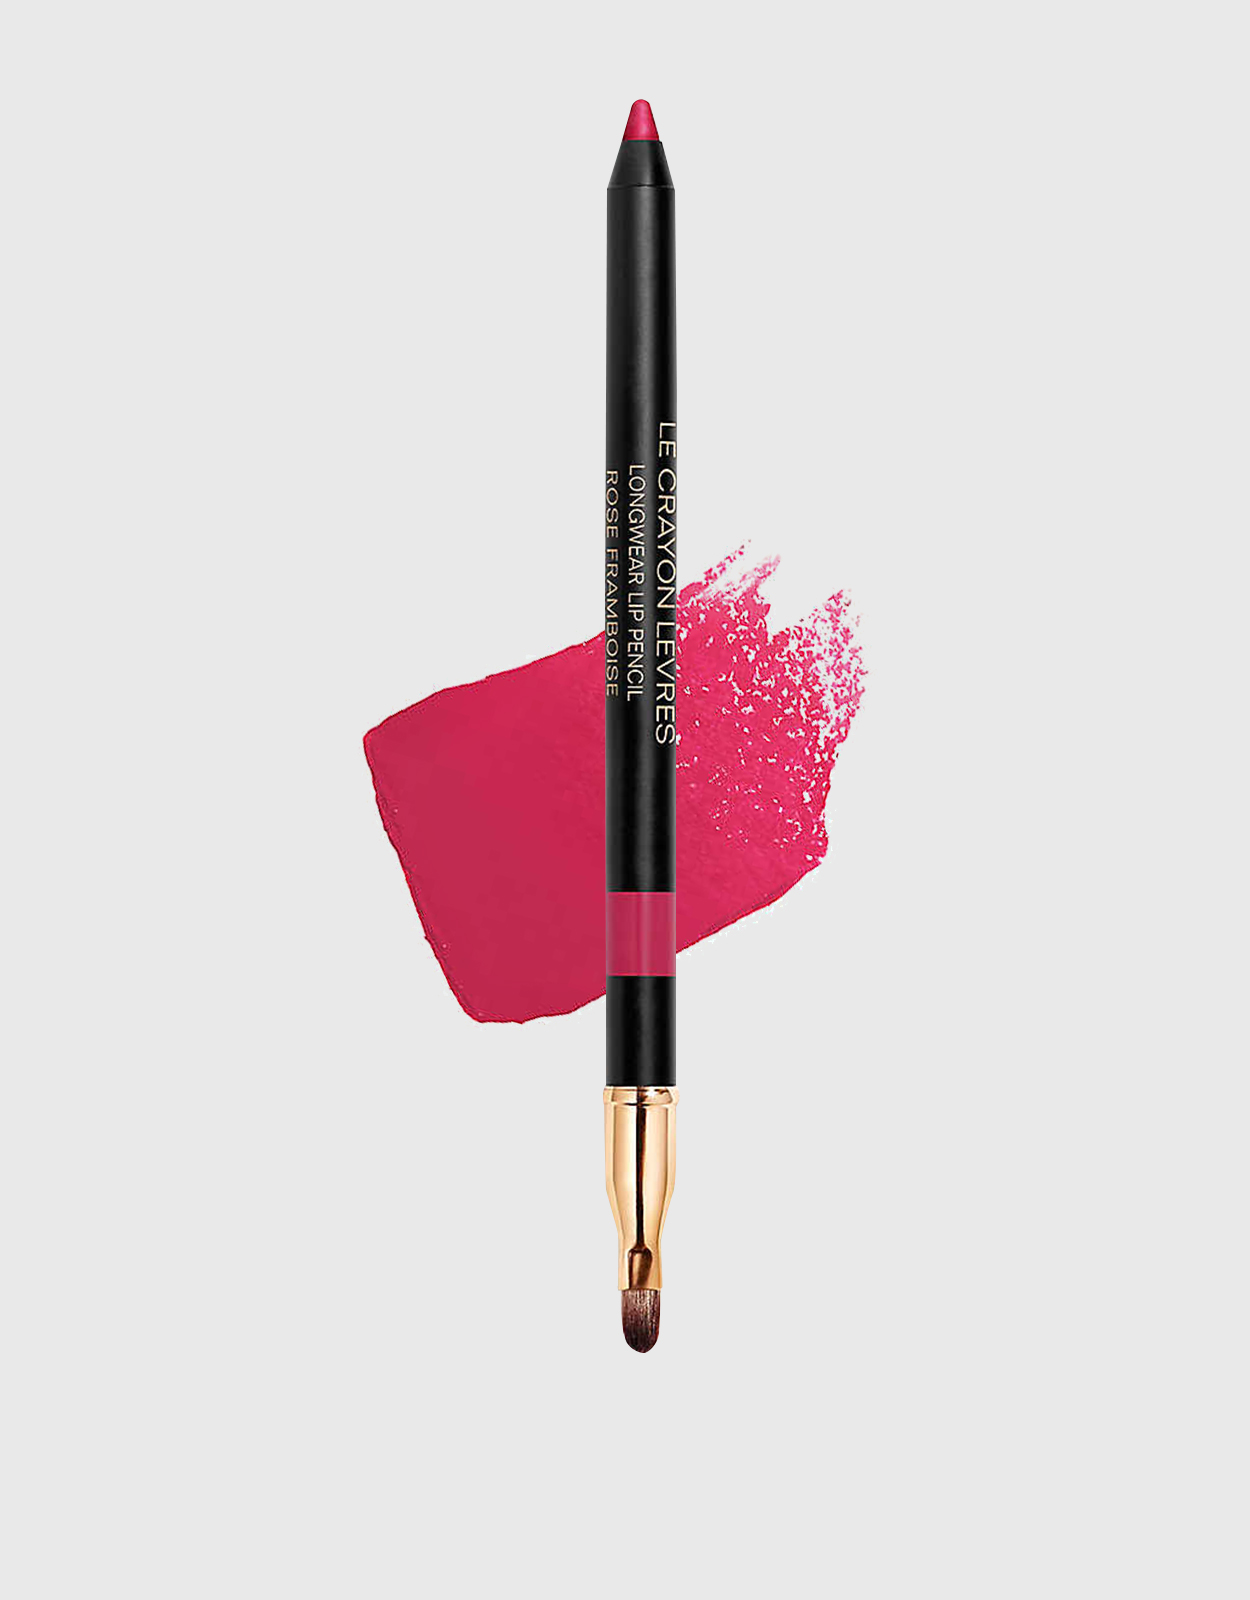 Chanel Beauty Le Crayon Levres Longwear Lip Pencil-Rose Framboise  (Makeup,Lip,Lip liner)